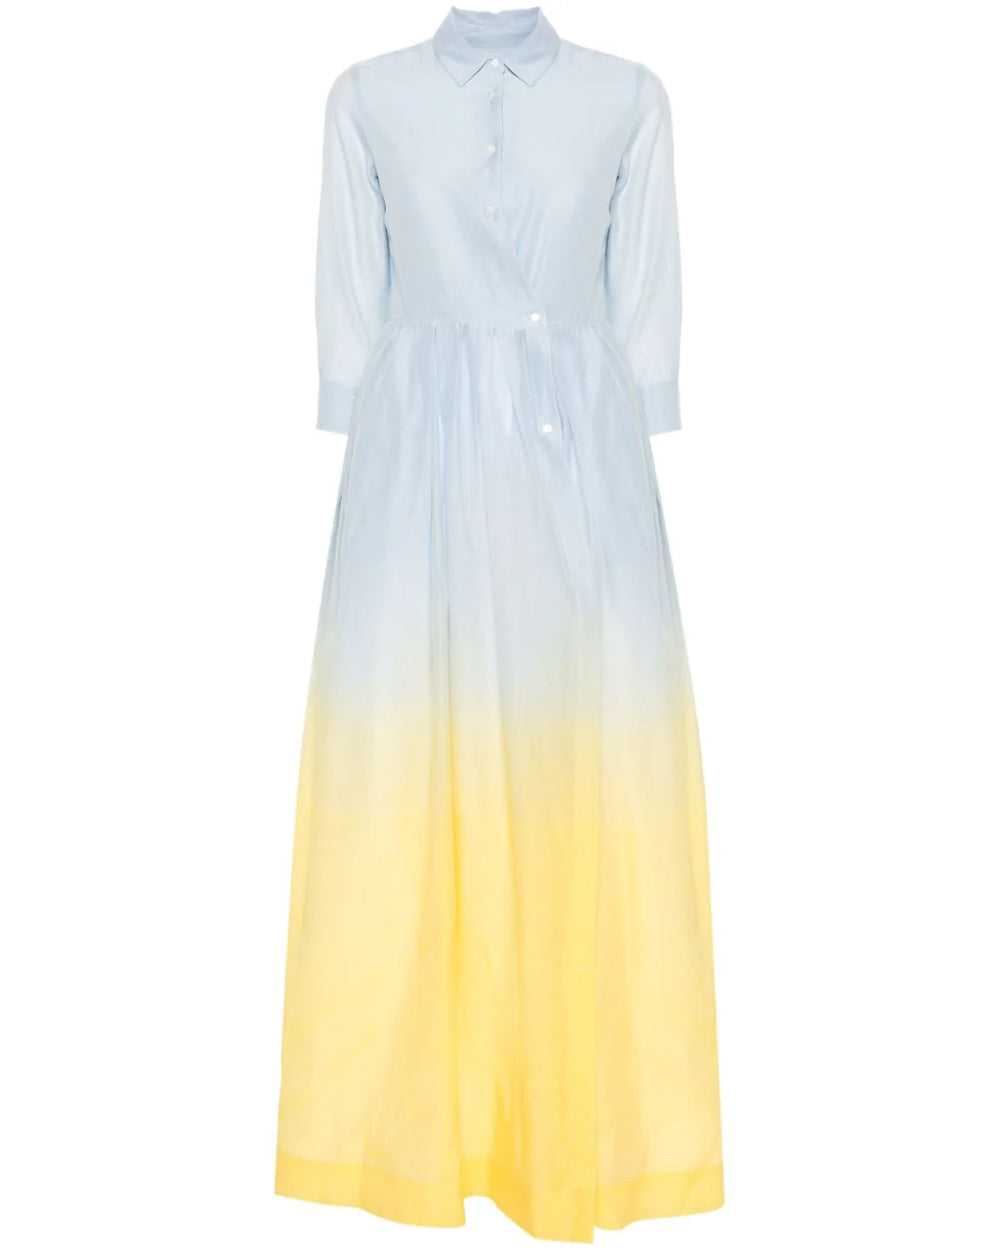 Blue and Yellow Degrade Edna Shirt Dress